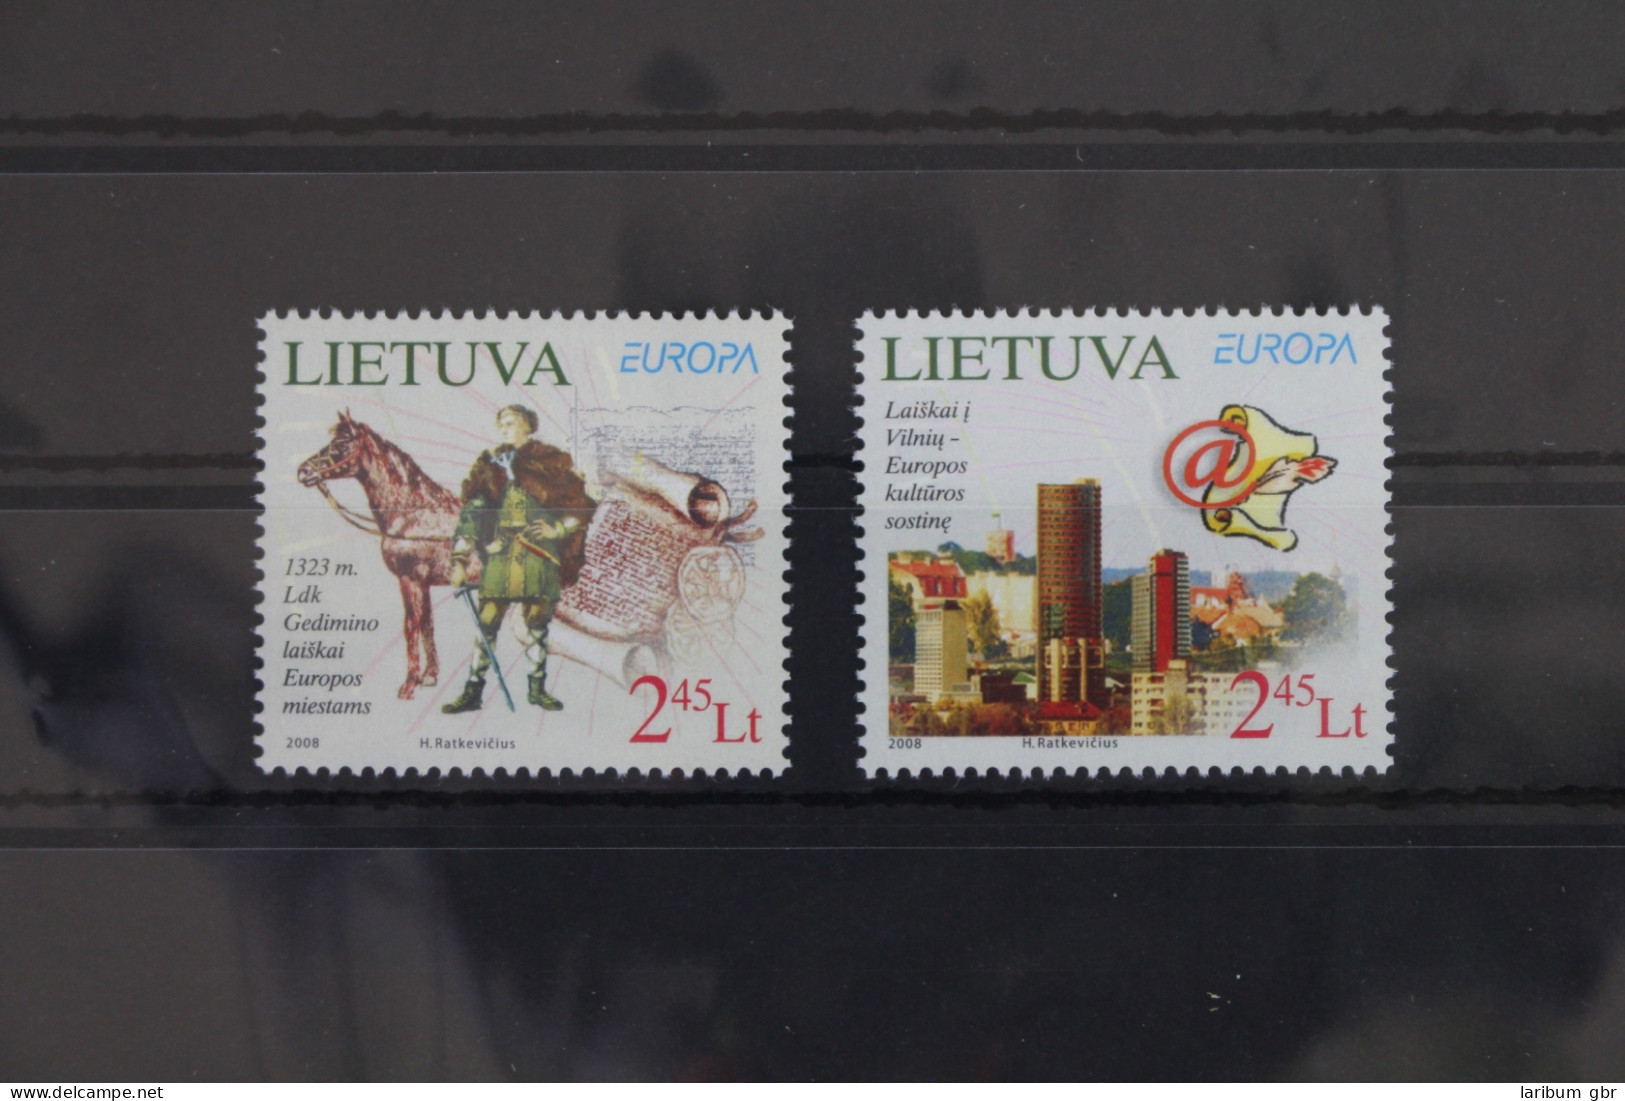 Litauen 970-971 Postfrisch Europa Der Brief #VT334 - Lithuania